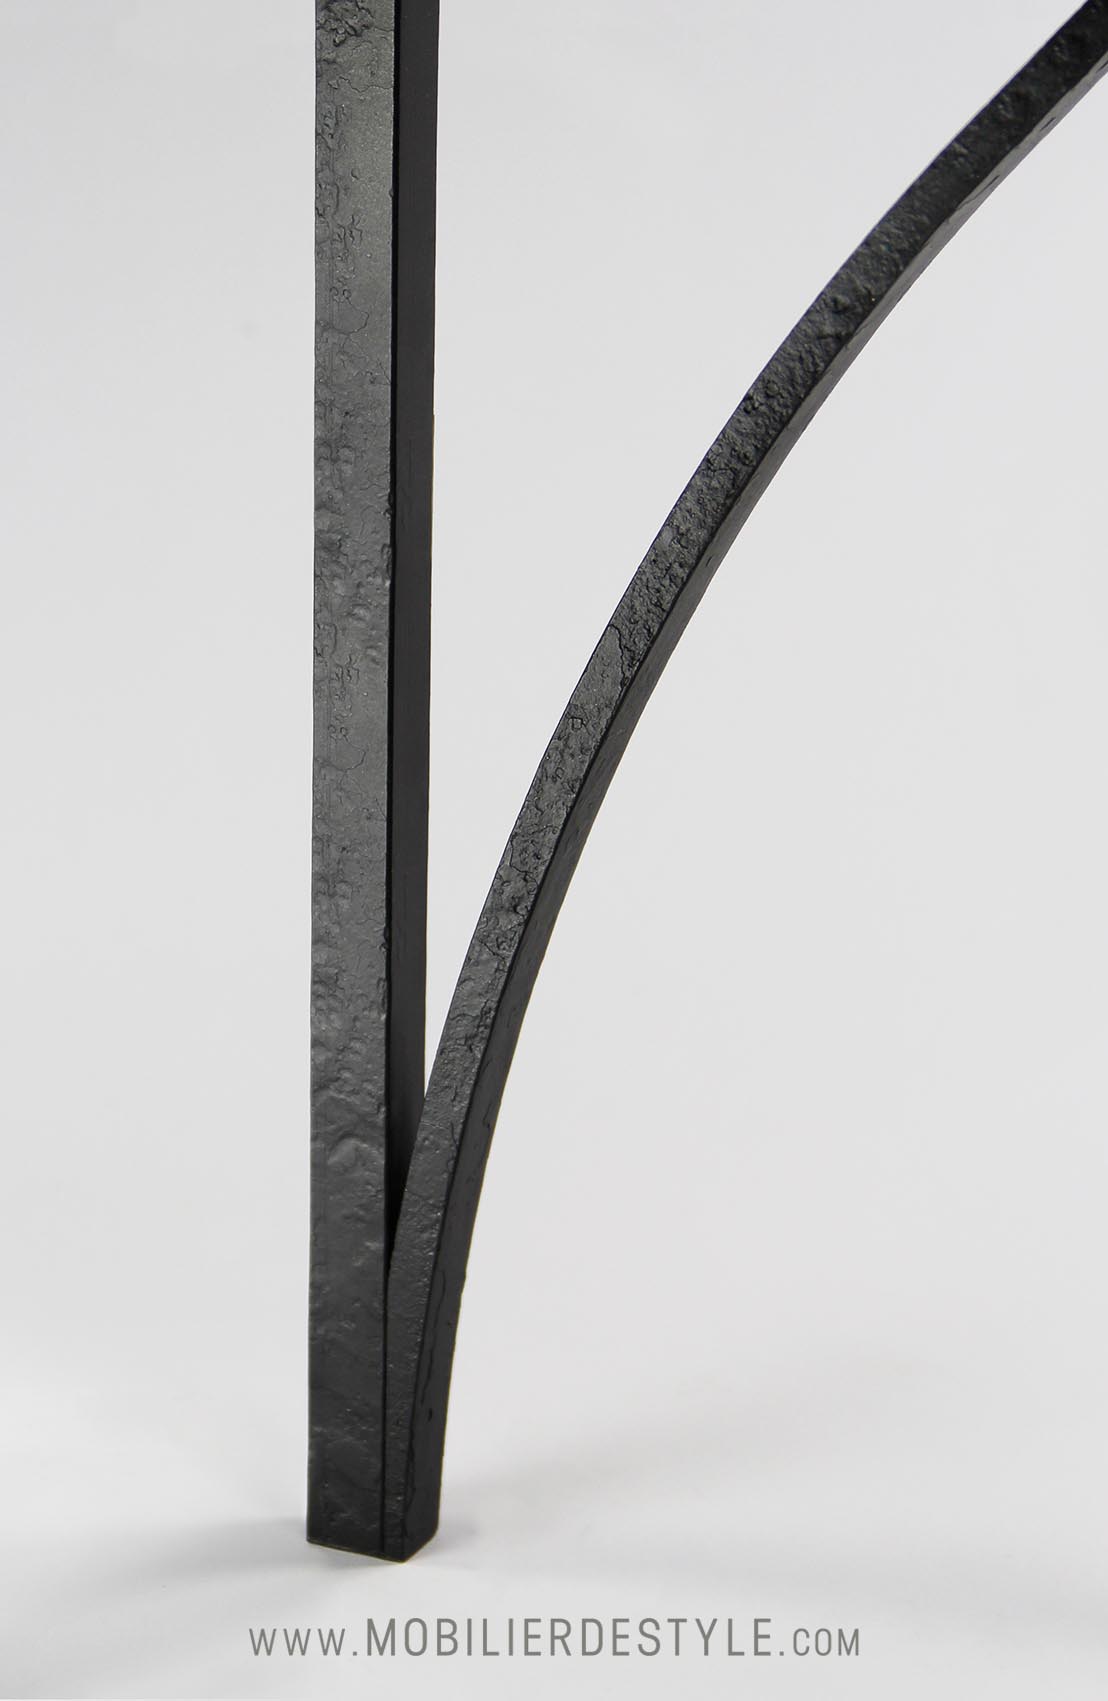 Finish 4 : Black painted wrought iron